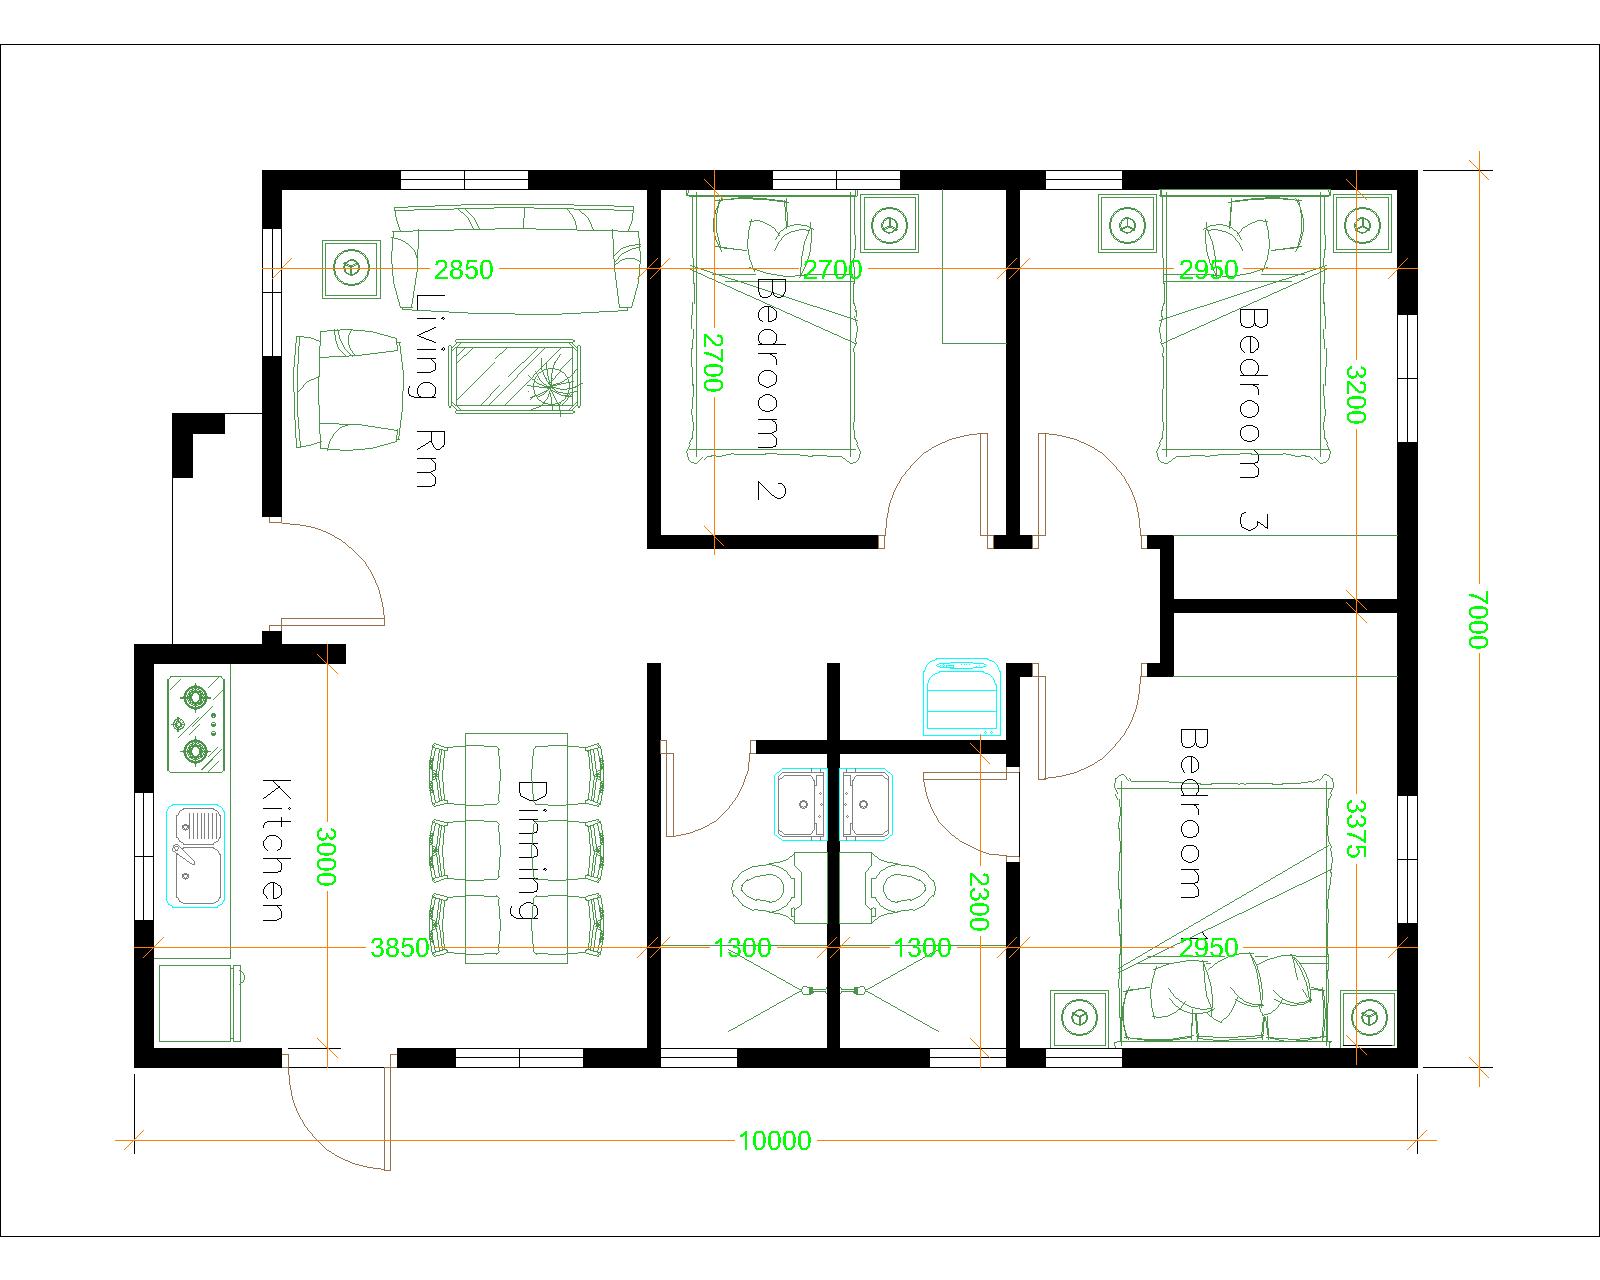 House Design 7x10 with 3 Bedrooms Terrace Roof floor plan